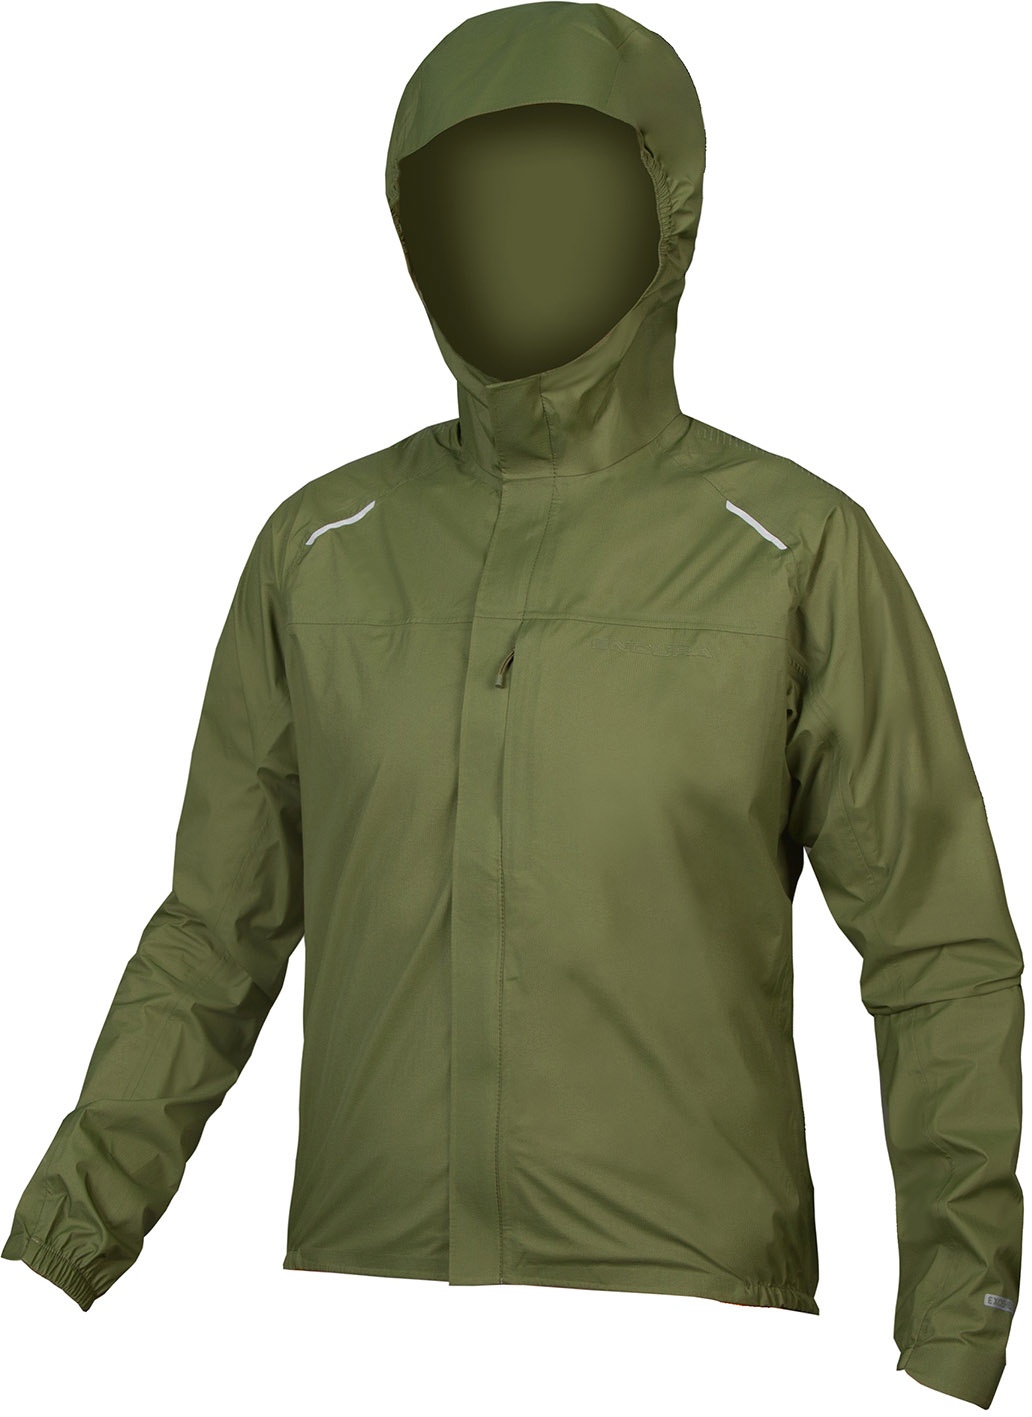 Beklædning - Cykeljakker - Endura GV500 Waterproof Jacket - Grøn